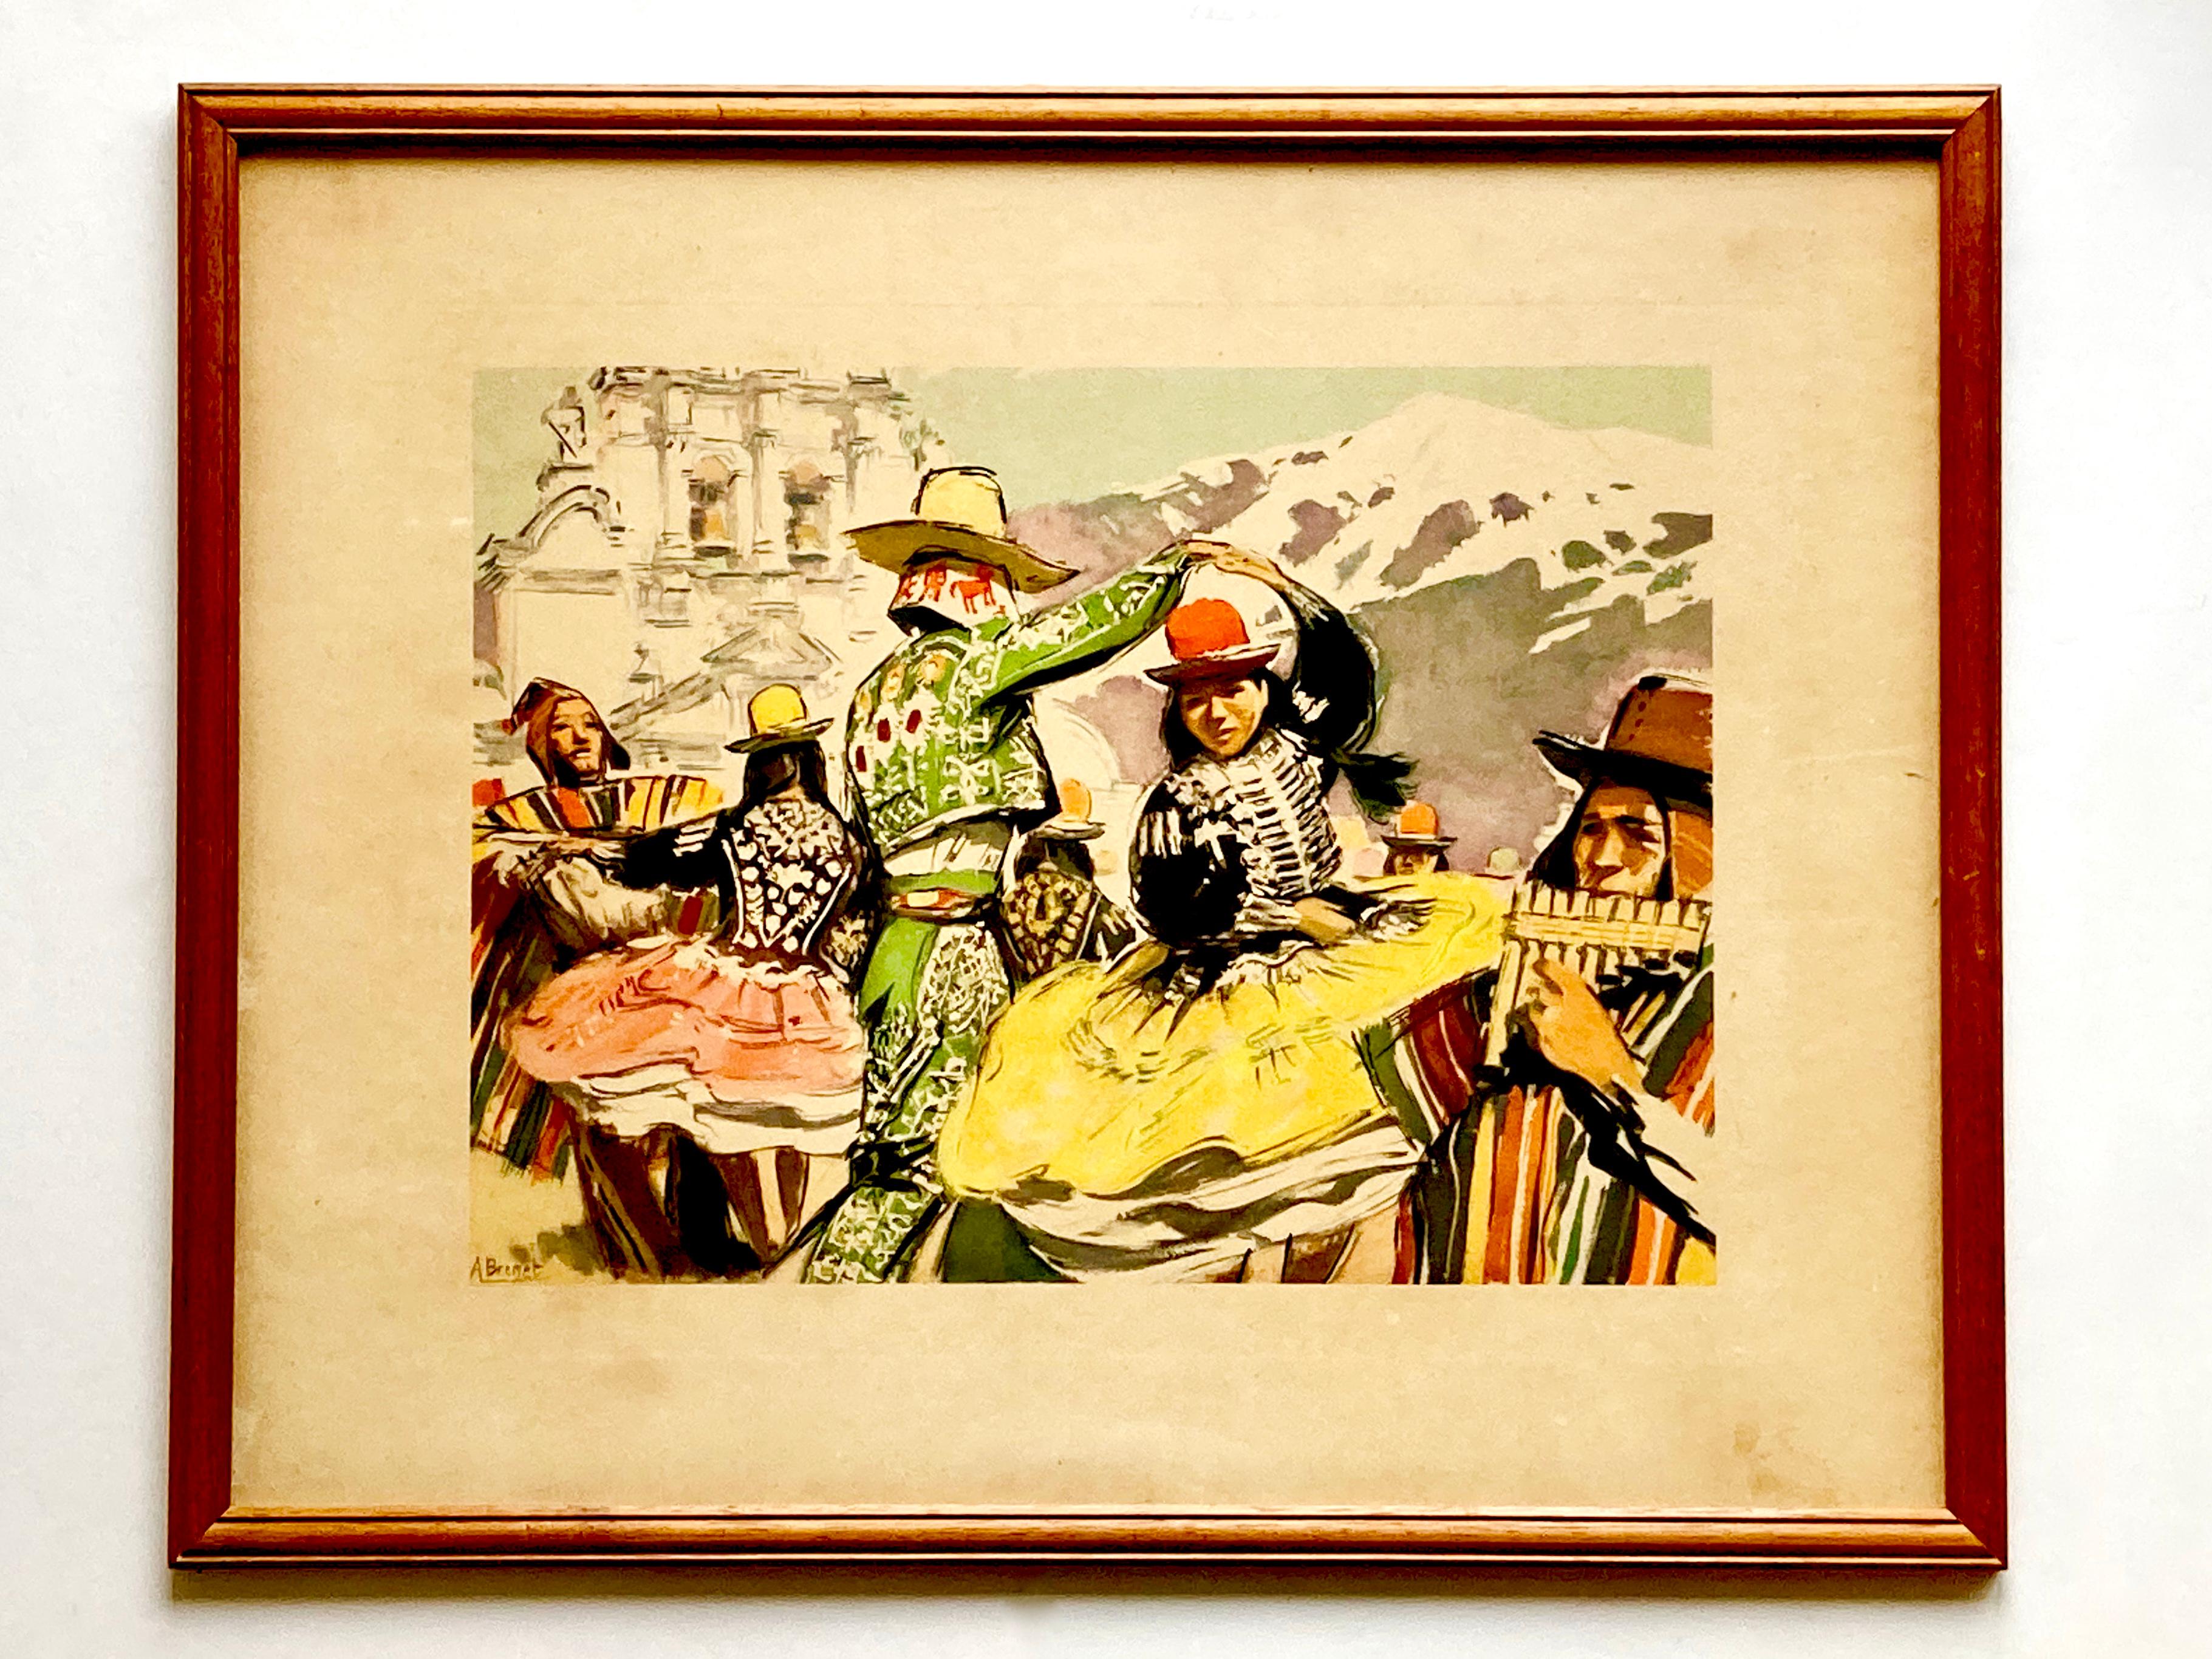 Deux authentiques tirages en couleurs des années 1950, encadrés, d'après des originaux de l'artiste français Albert Brenet (1903-2005). L'une dépeint une scène colorée de Thaïlande et l'autre de Bolivie.

Victor Albert Eugène Brenet est né en 1903 à